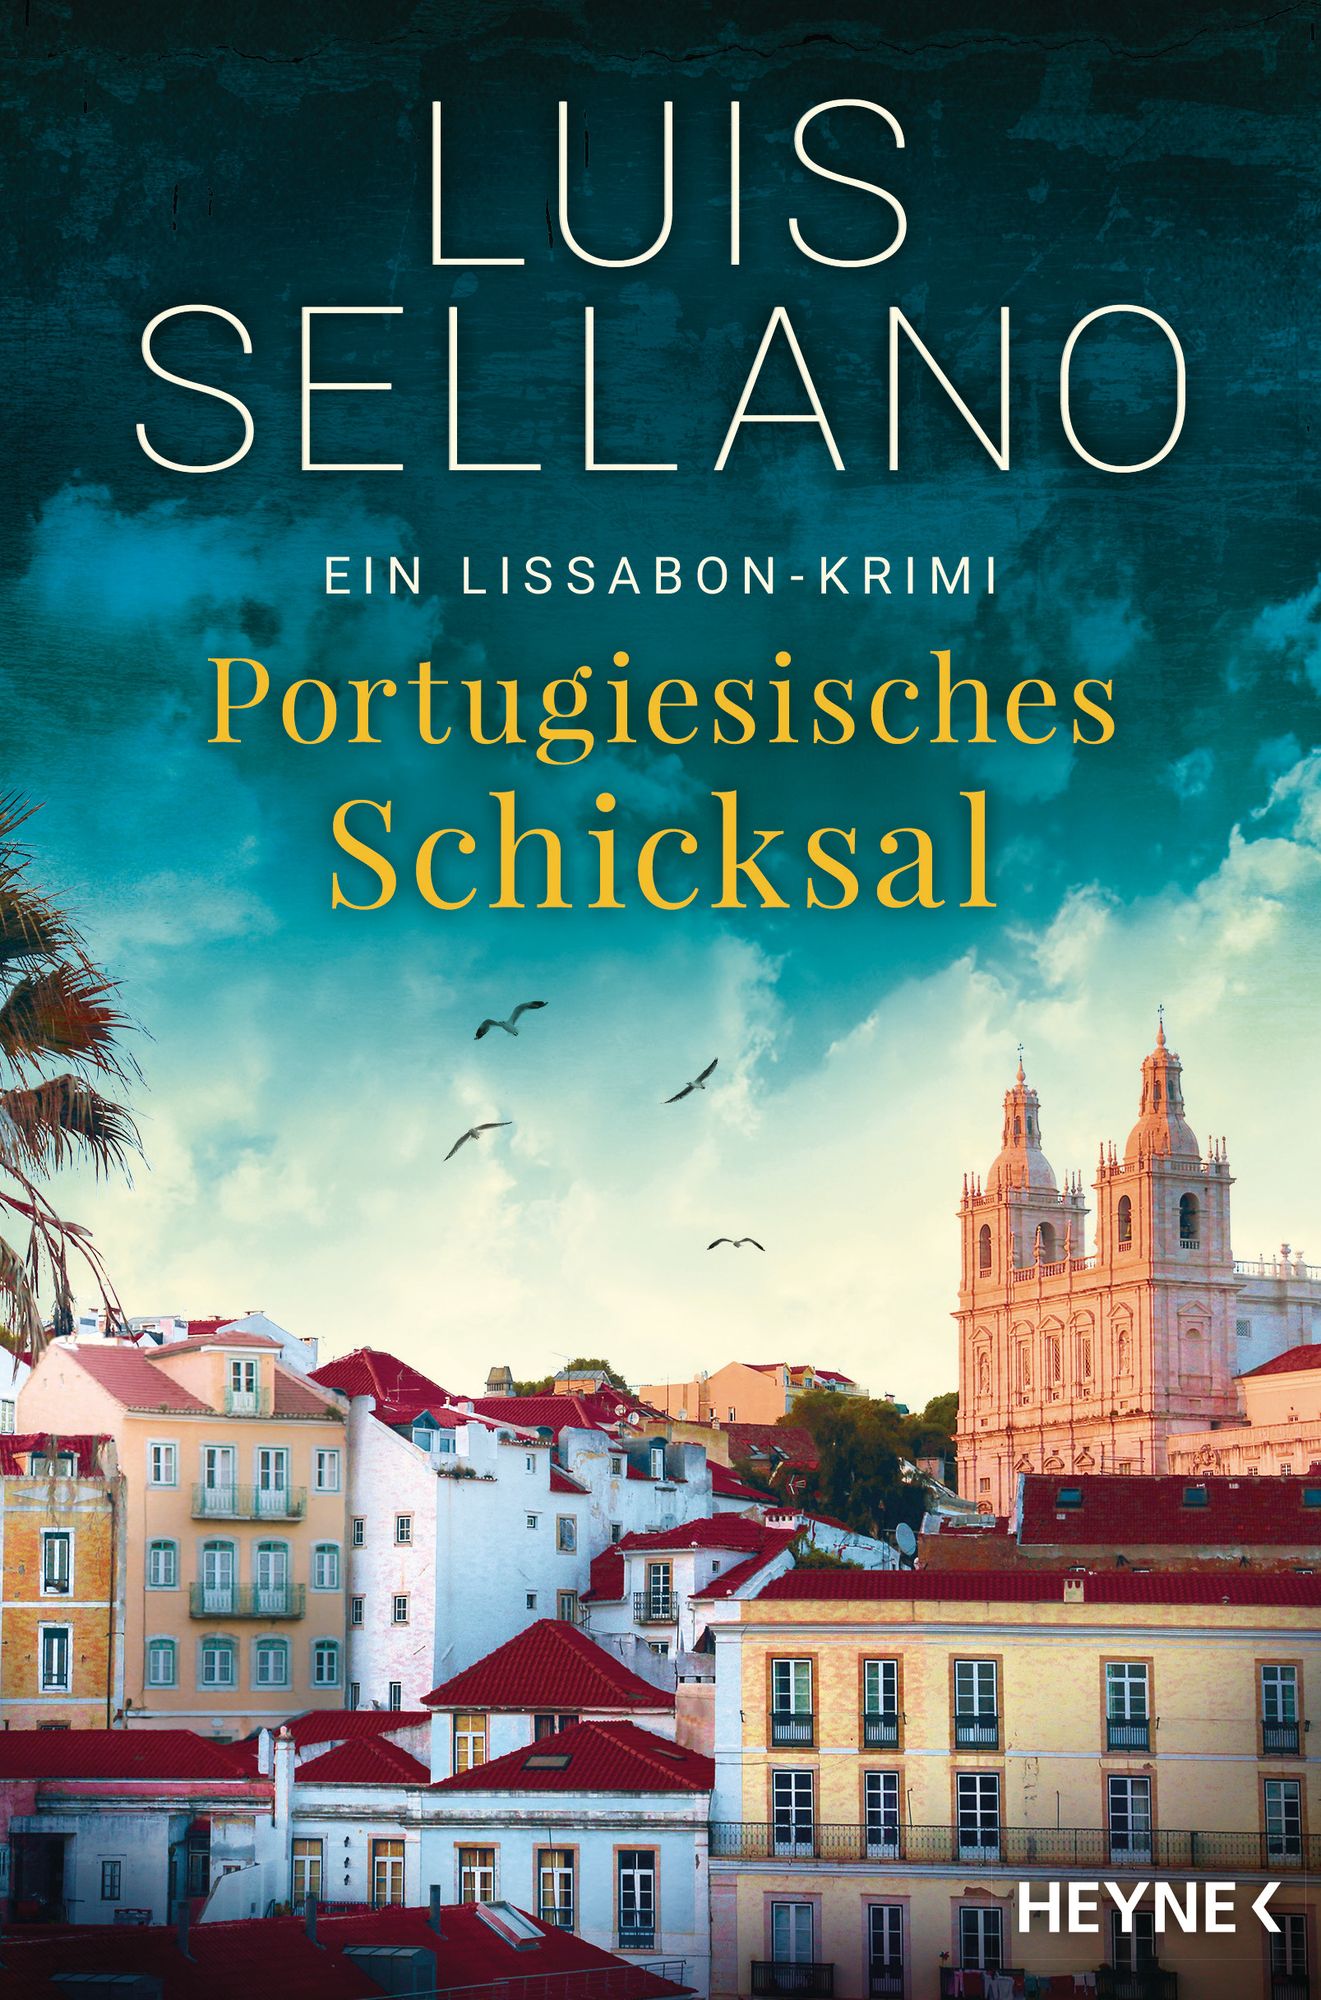 Luis Sellano: Portugiesisches Schicksal, ein Lissabon-Krimi